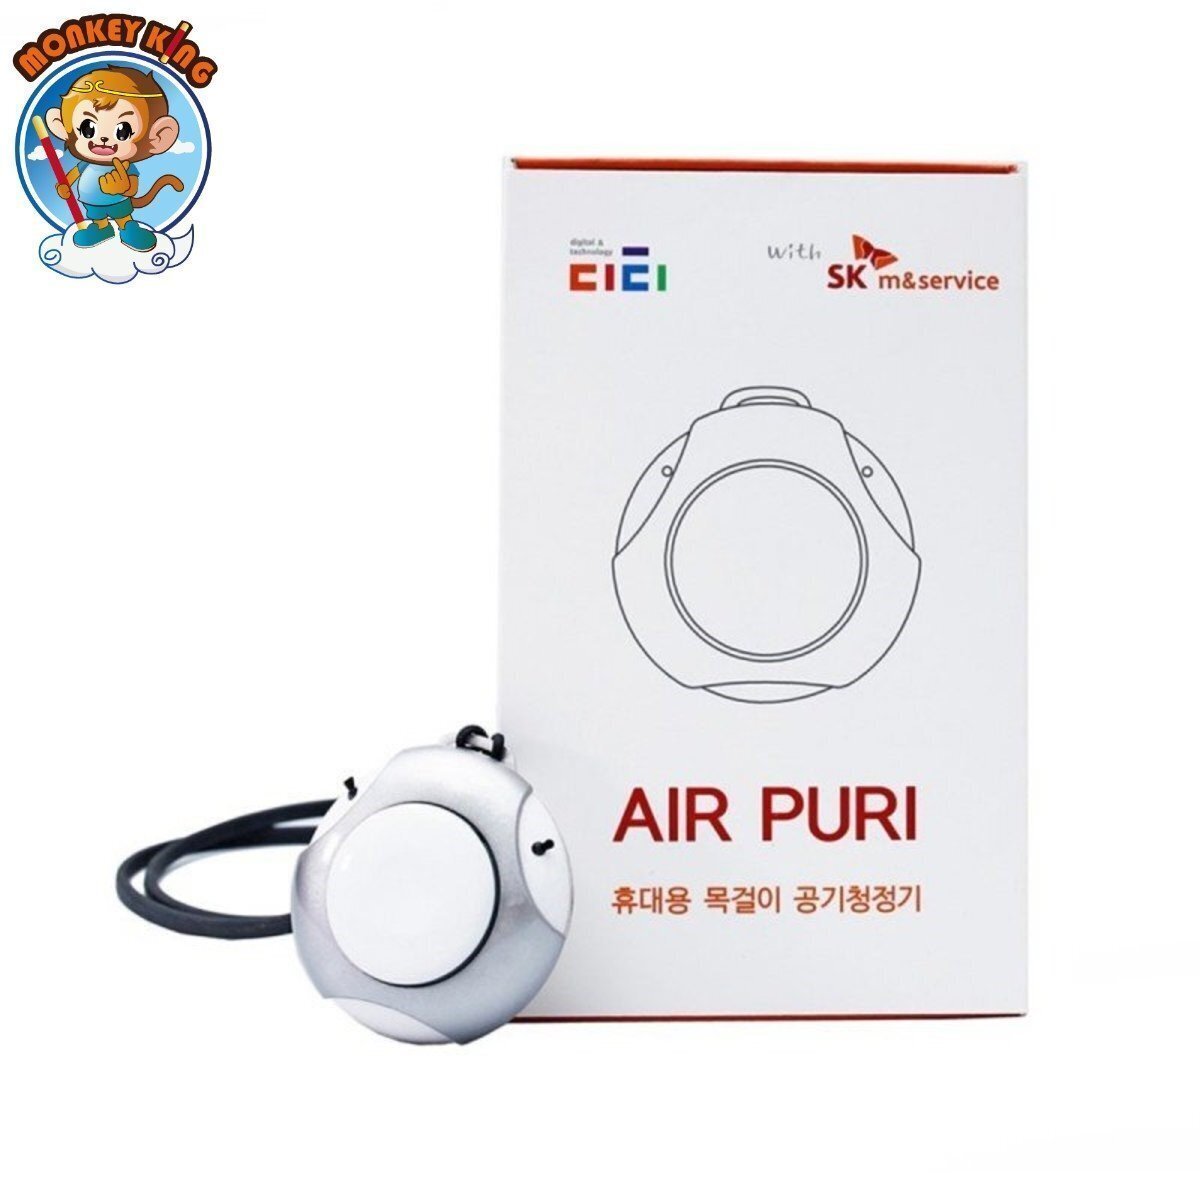 Air Puri 韓國隨身迷你負離子空氣淨化機 (EST101)  / 空氣清新機 - 白色